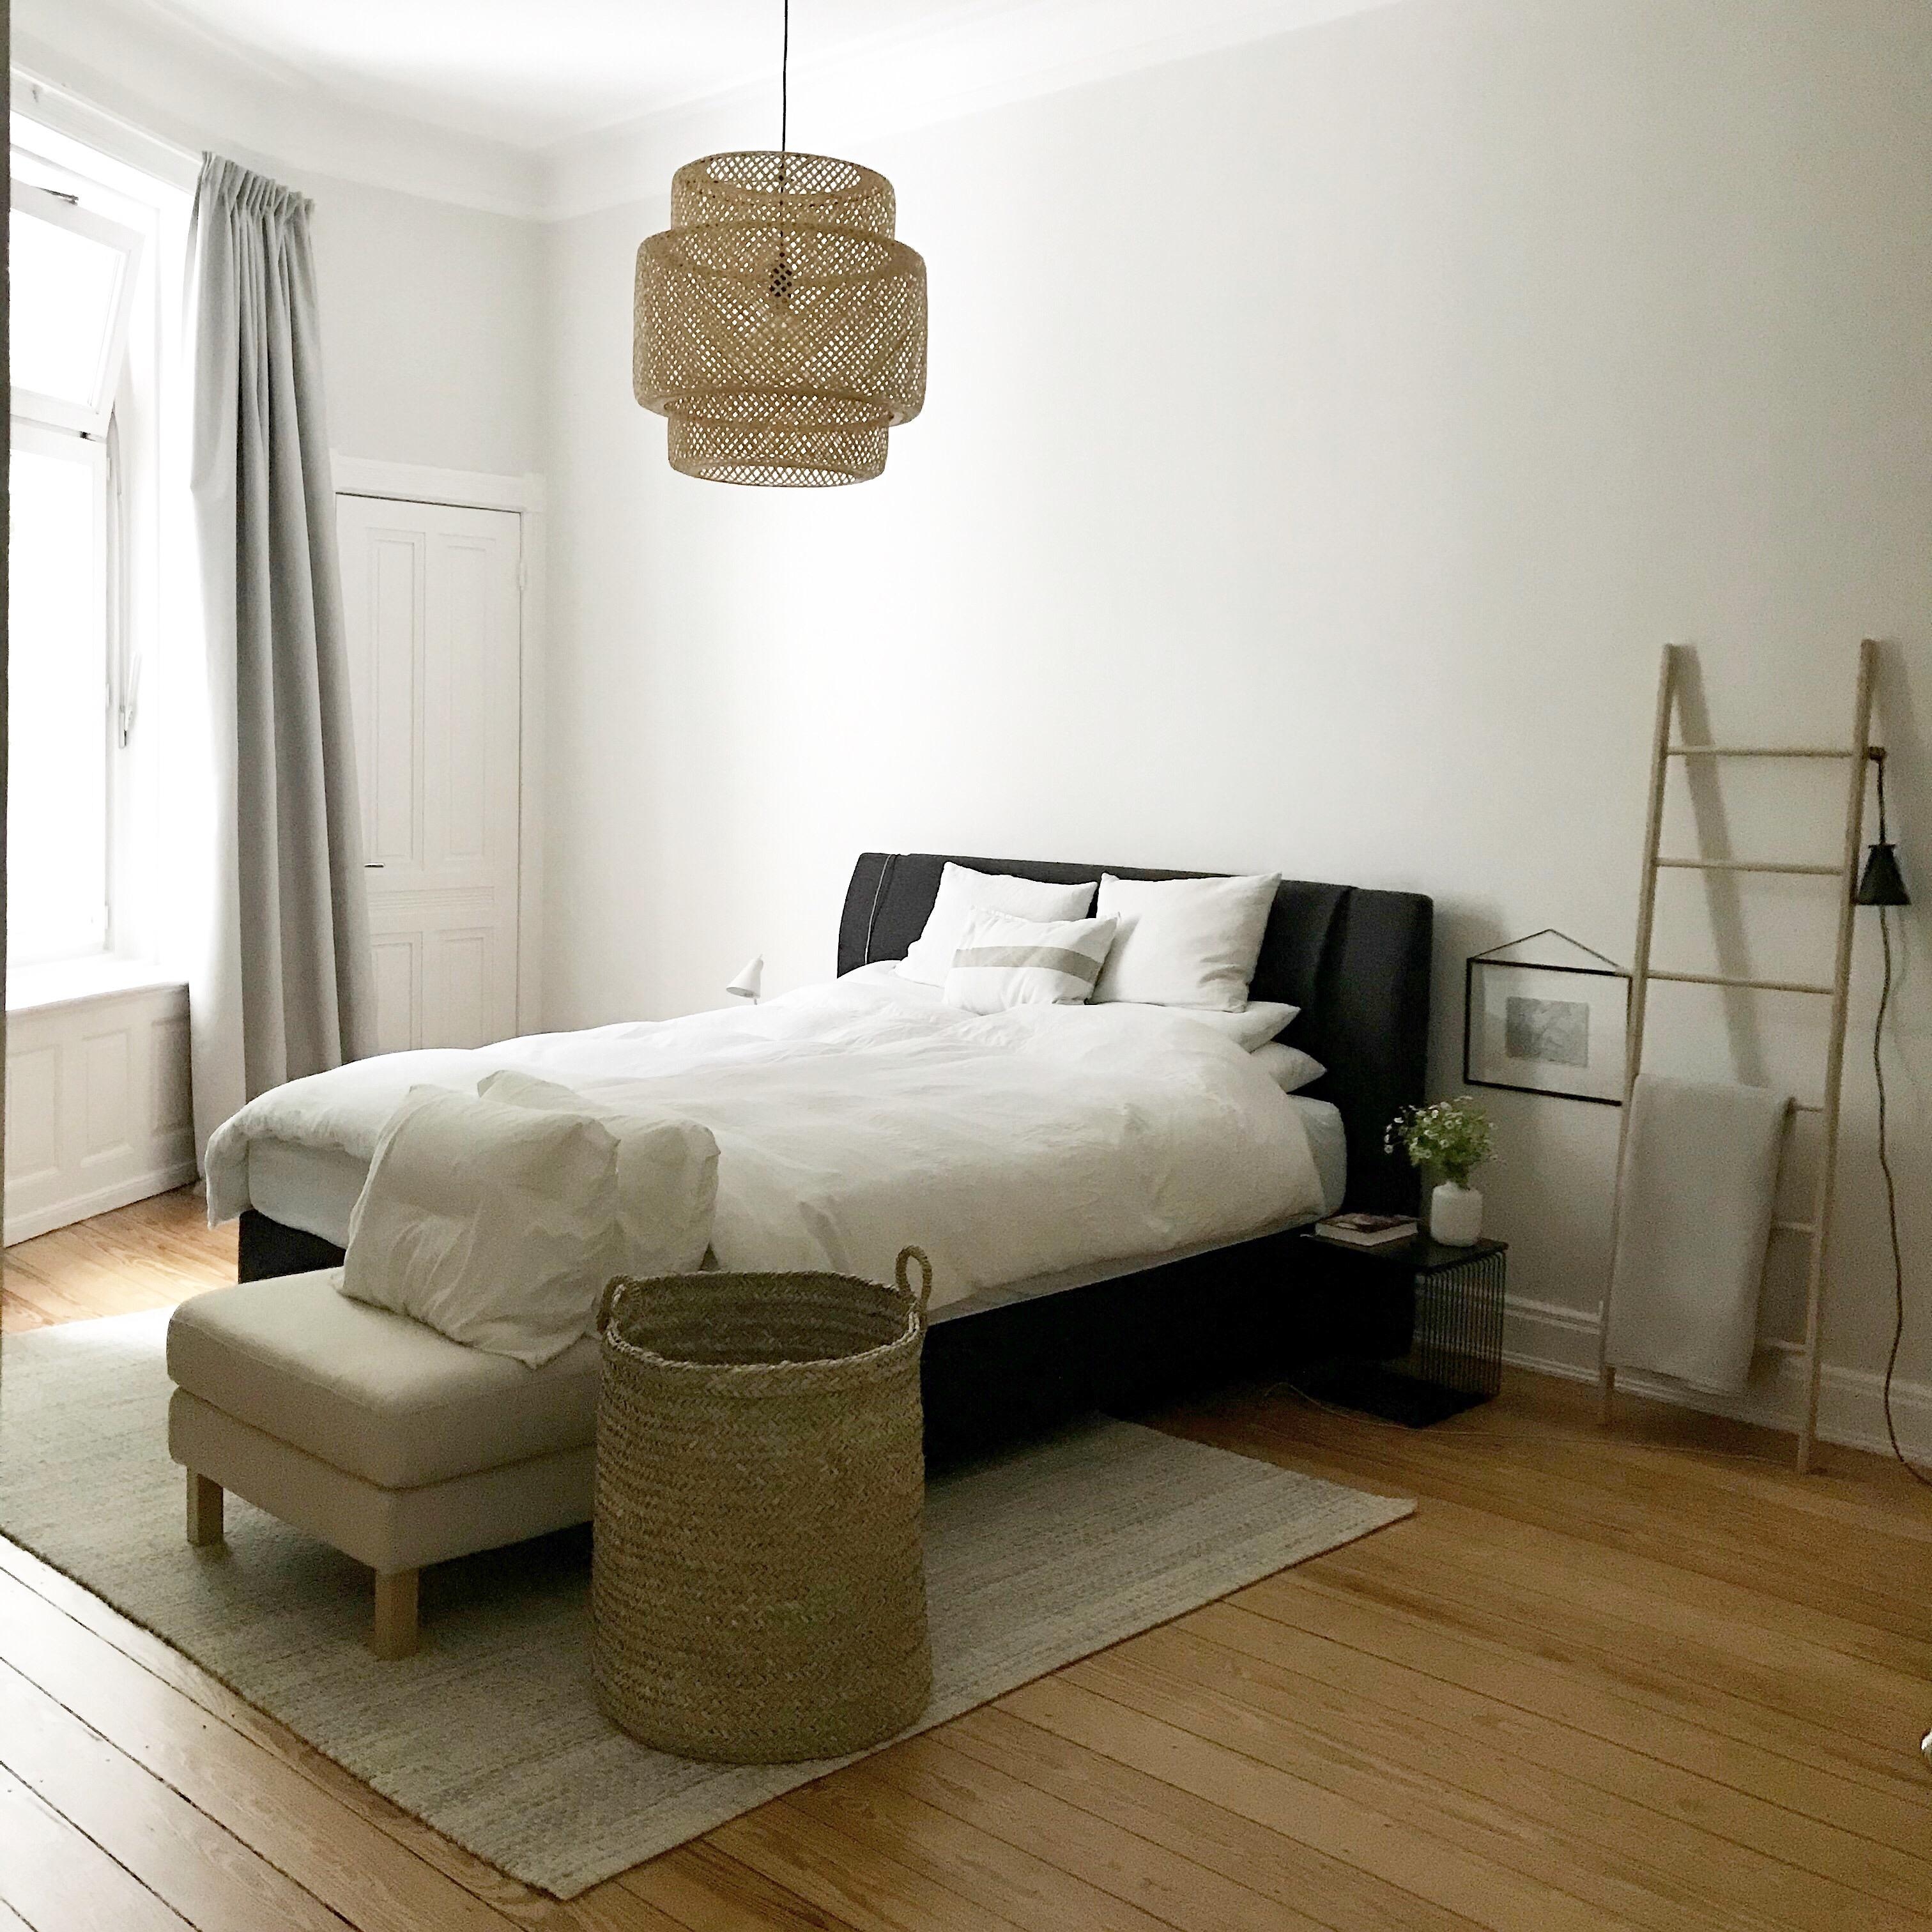 Ruhiger + besser #schlafen durch #minimalismus im #schlafzimmer #kleiderleiter #skandistyle #couchliebt #couchstyle